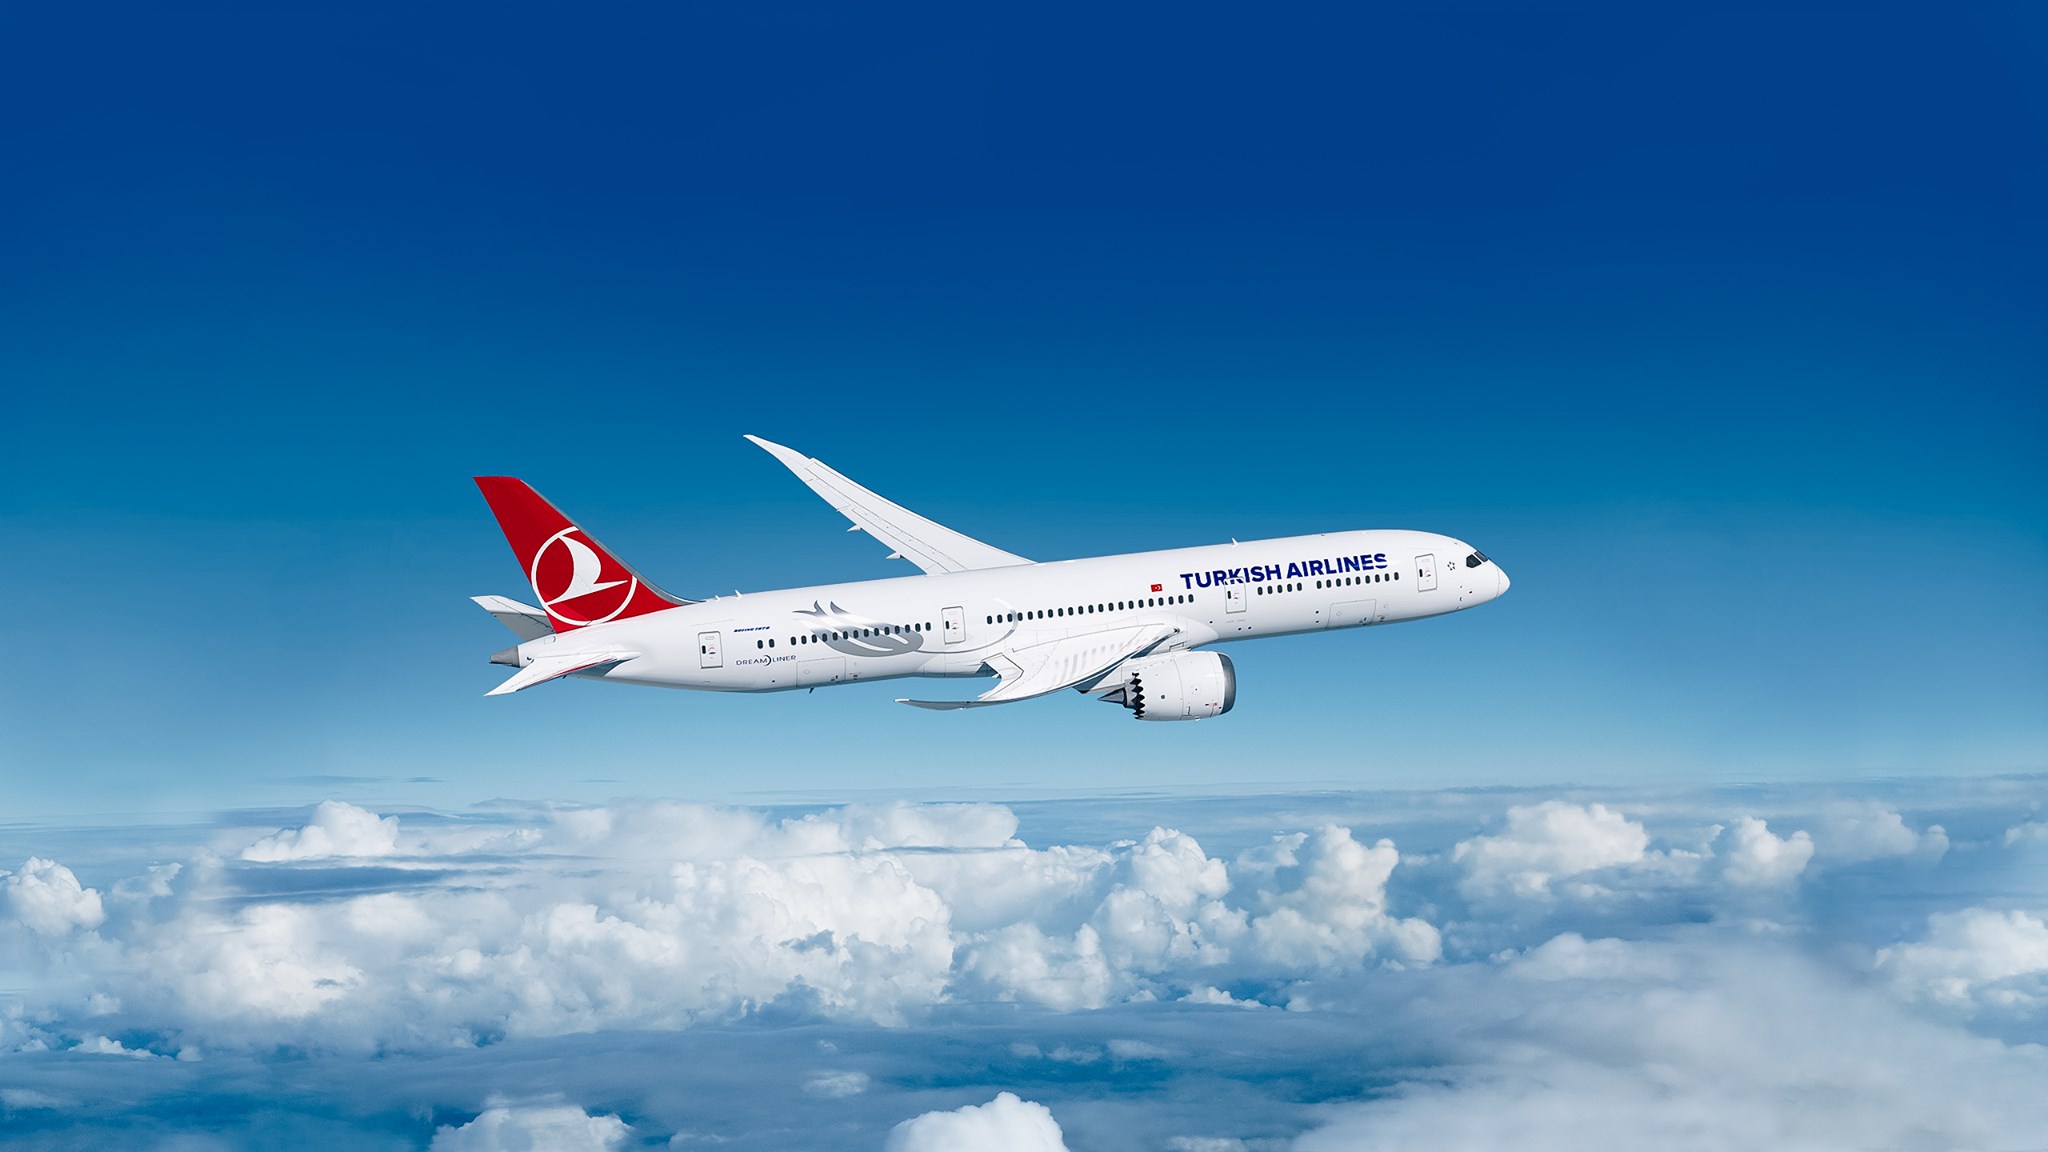 Afbeeldingsresultaat voor turkish airlines